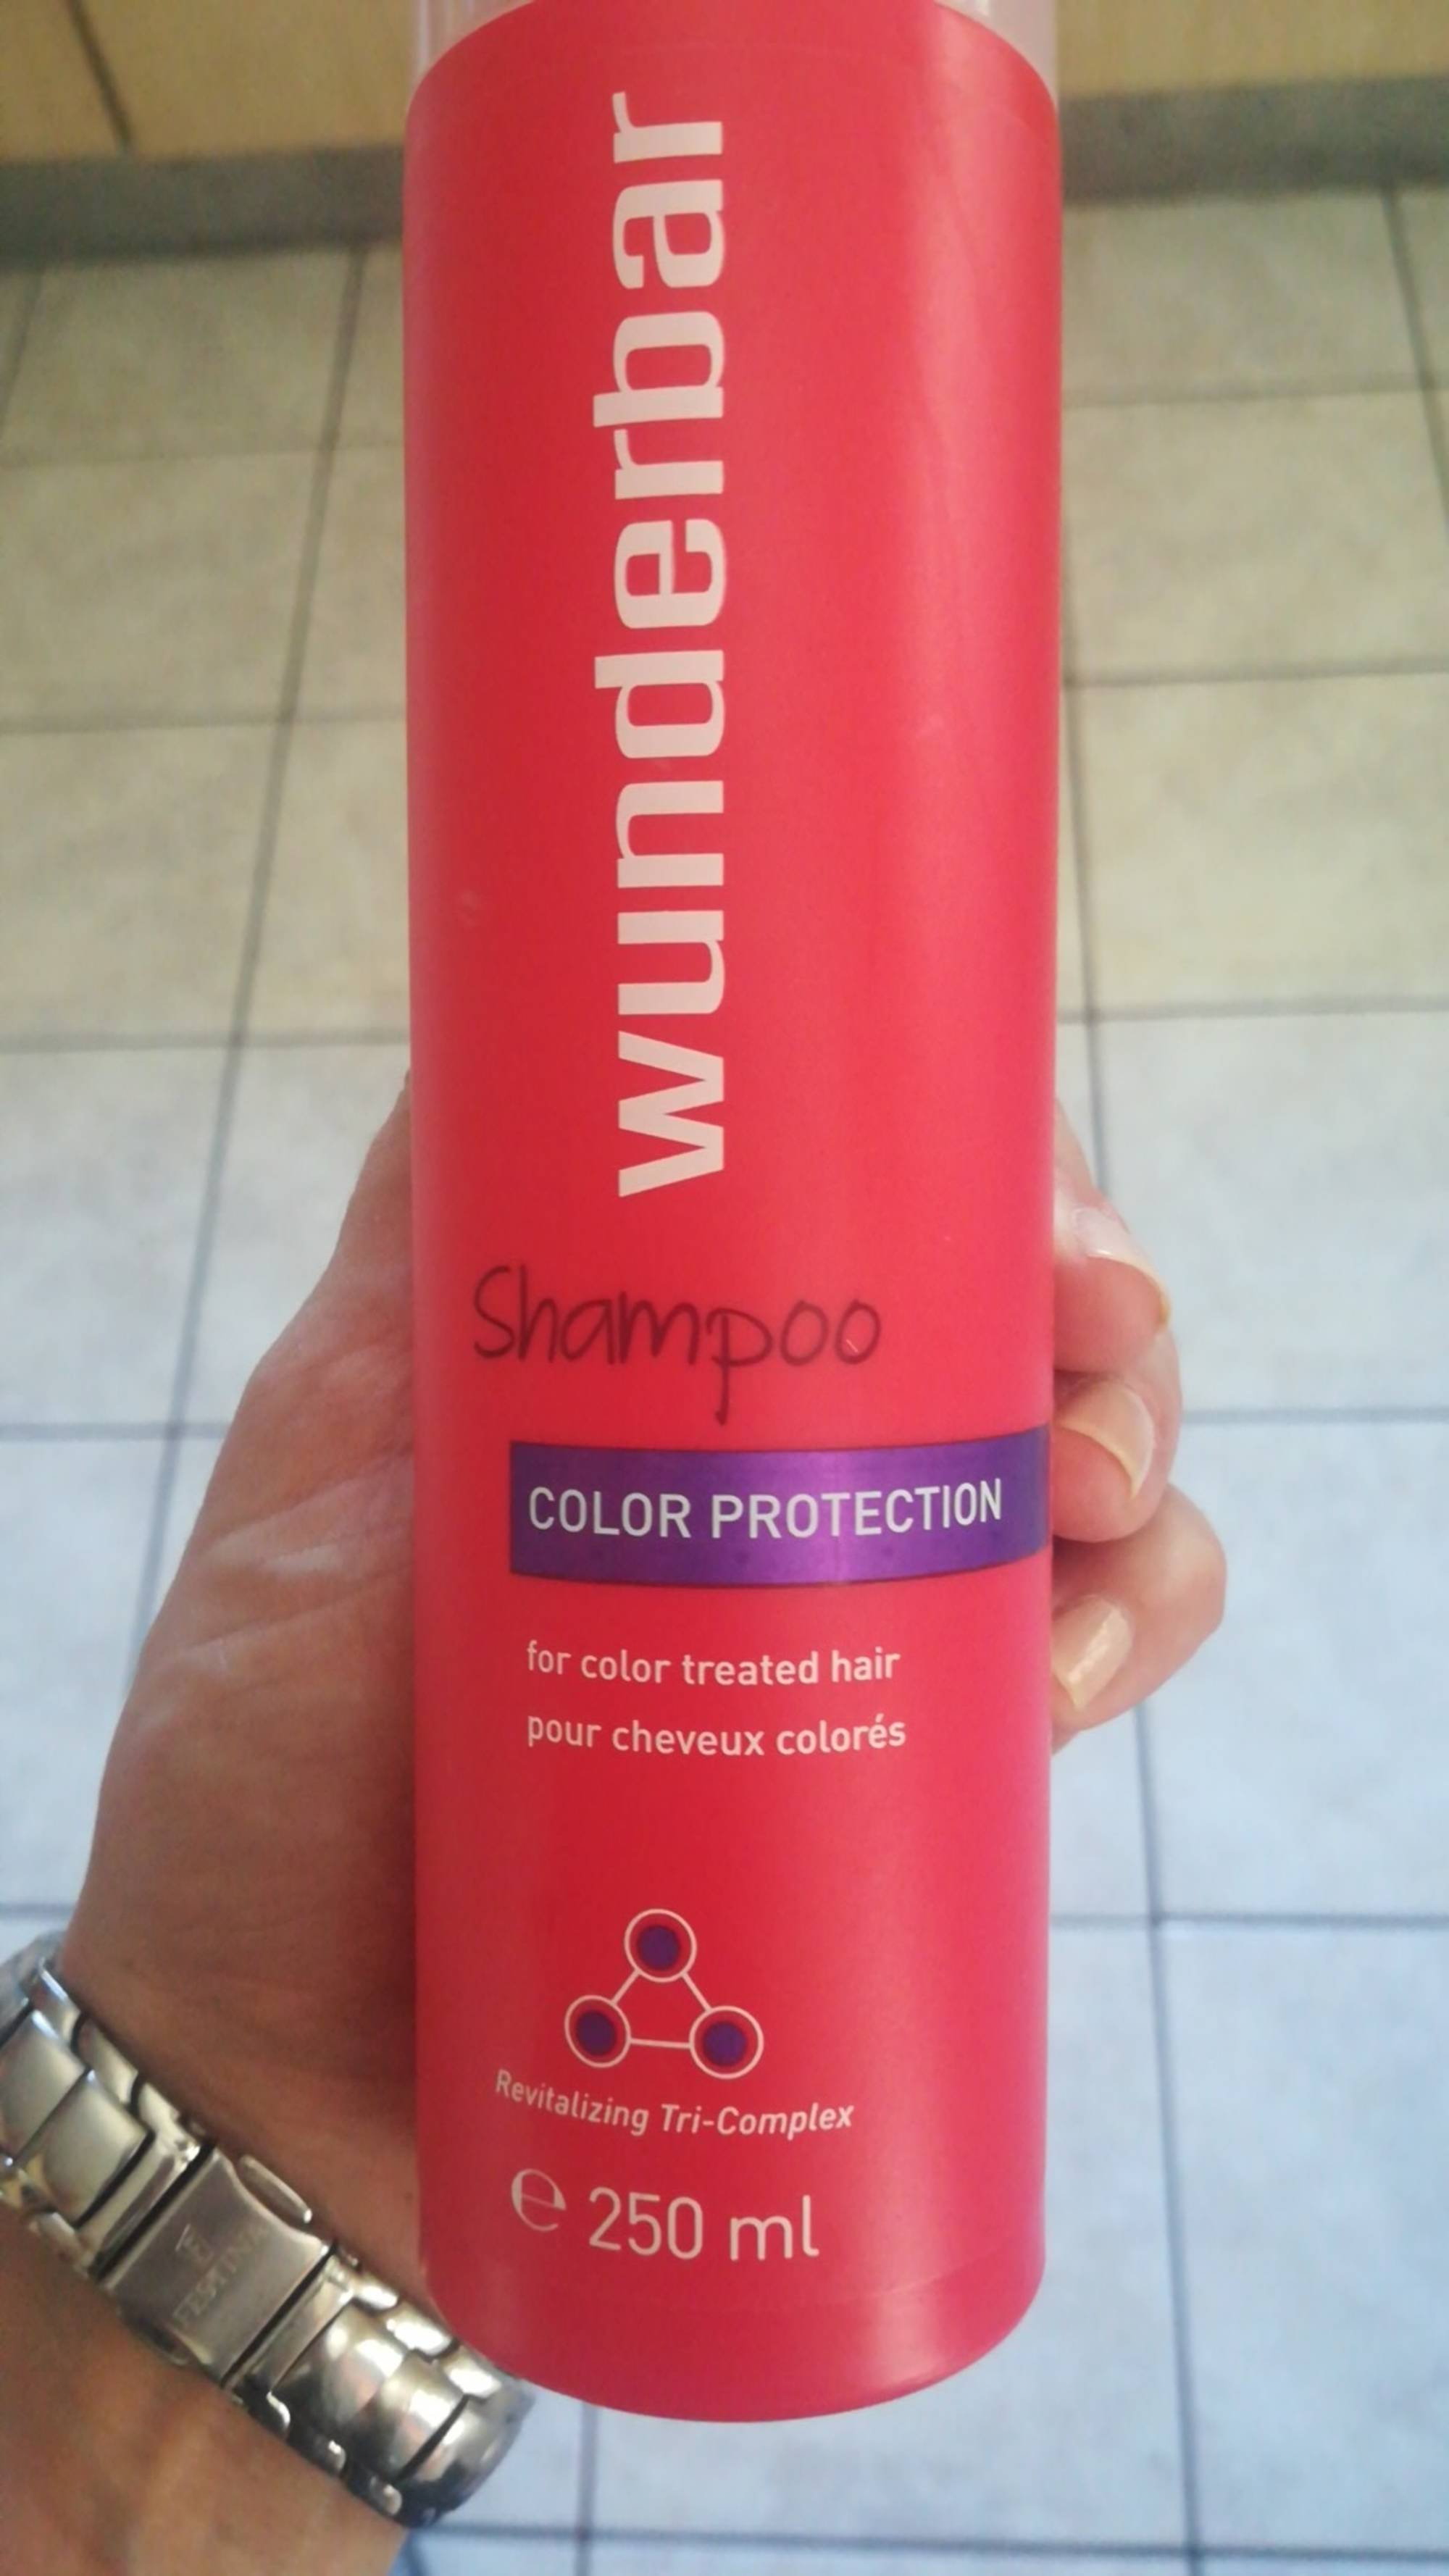 WUNDERBAR - Color protection - Shampoo - Pour cheveux colorés